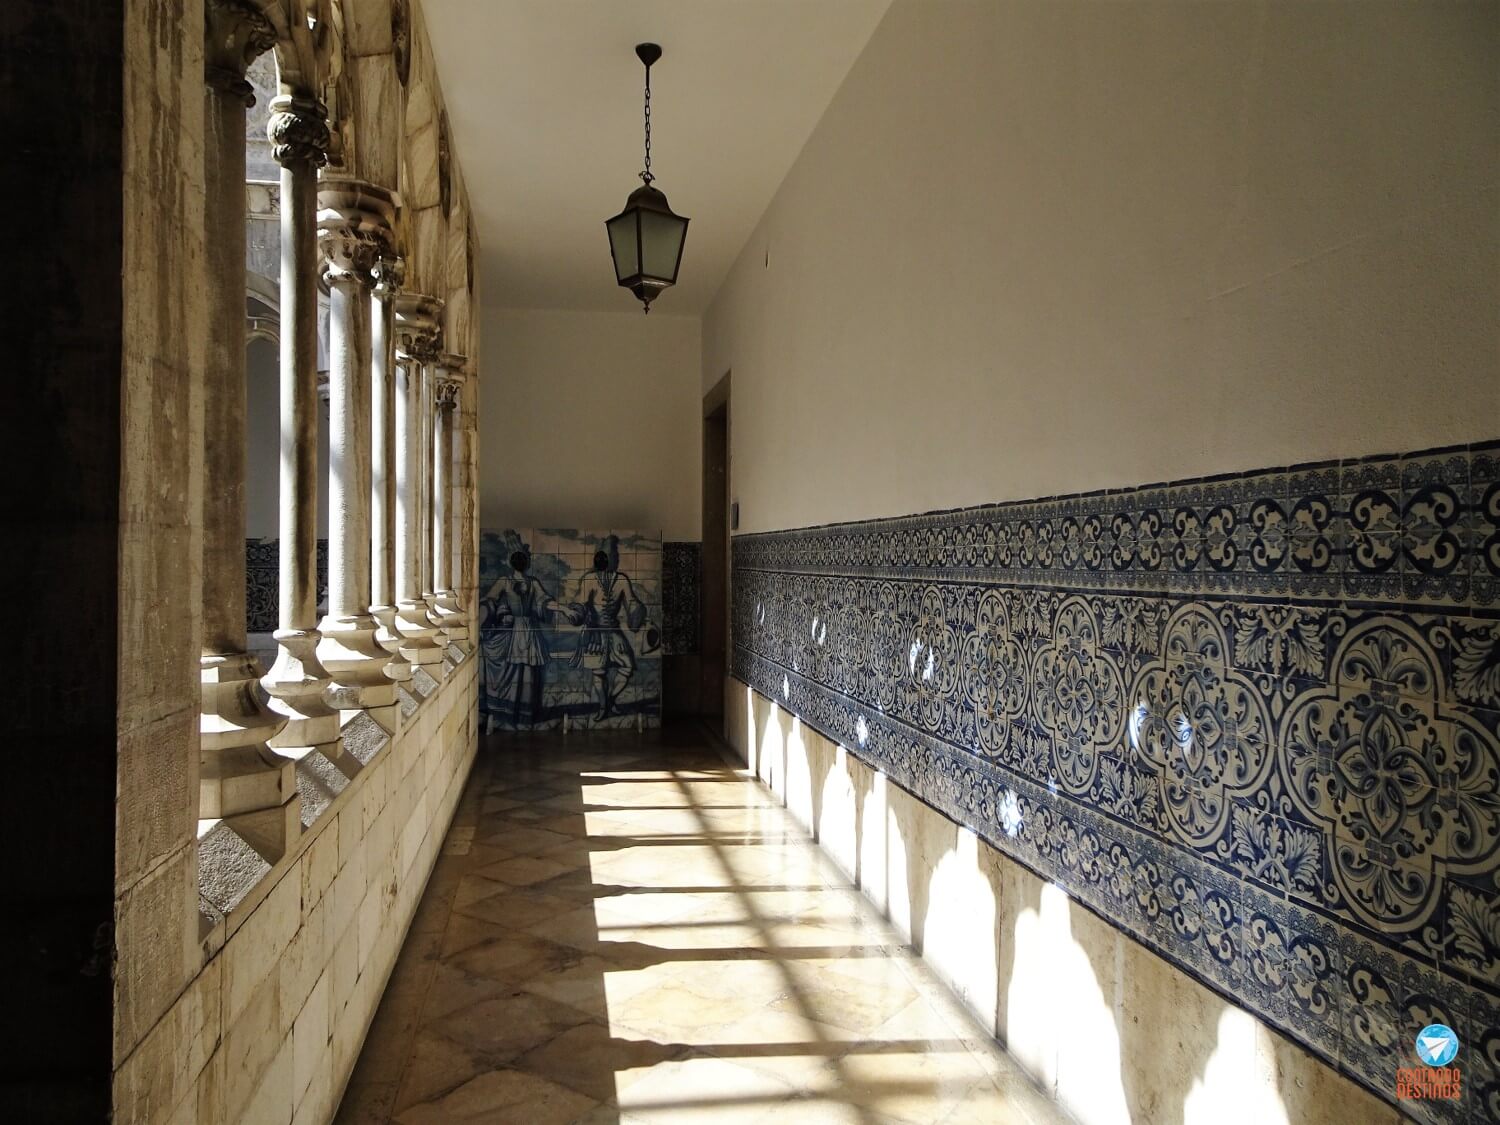 Museu Nacional Do Azulejo Saiba Mais Sobre O Patrimônio De Portugal